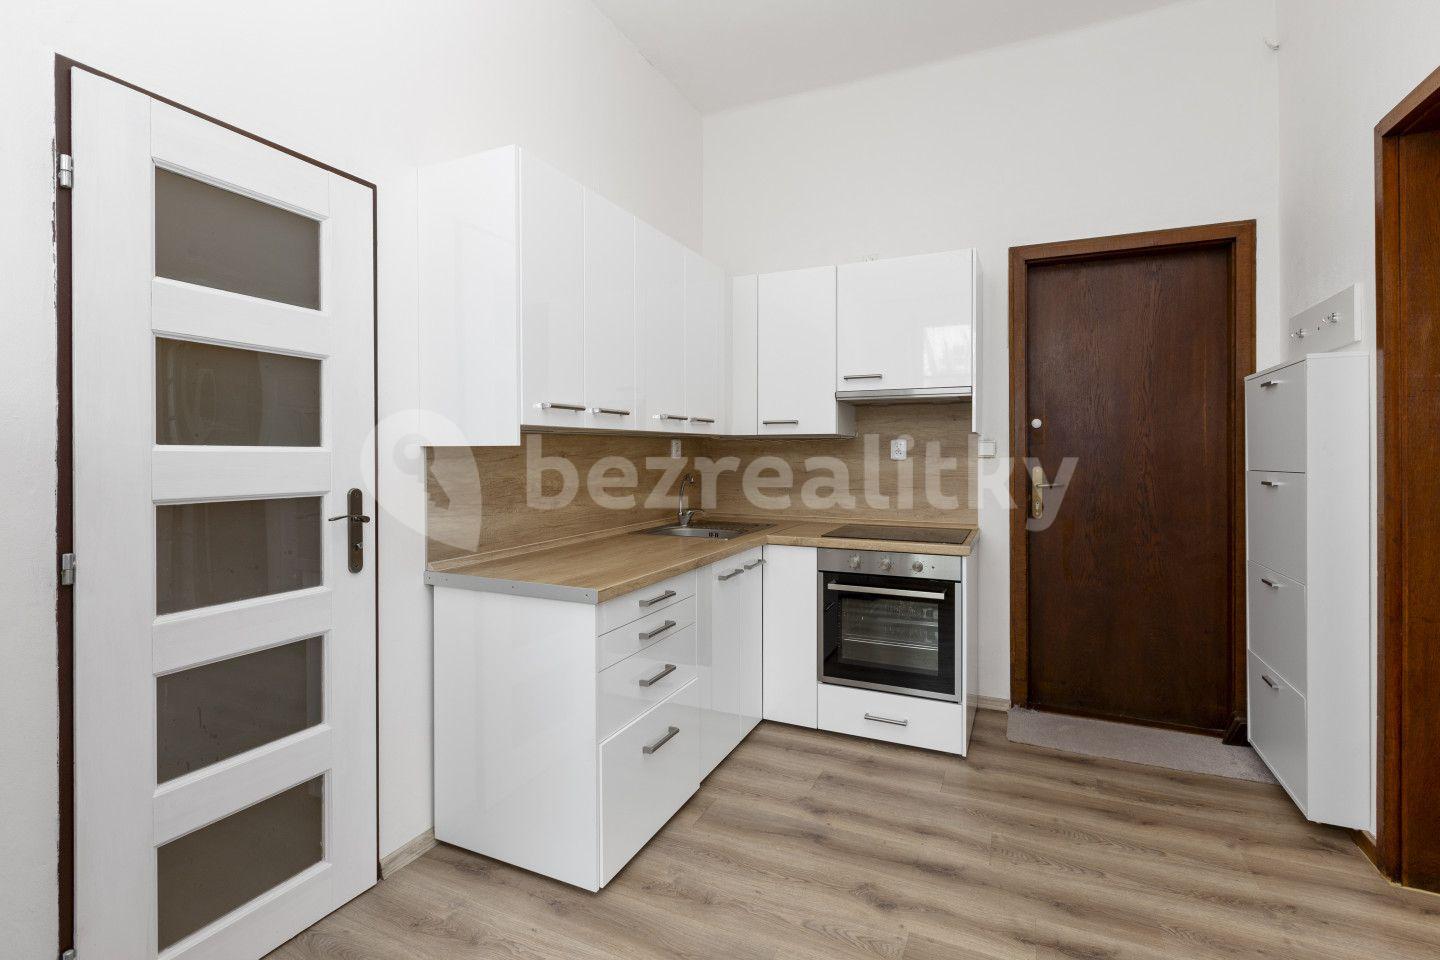 1 bedroom with open-plan kitchen flat for sale, 48 m², Nádražní, Svitavy, Pardubický Region